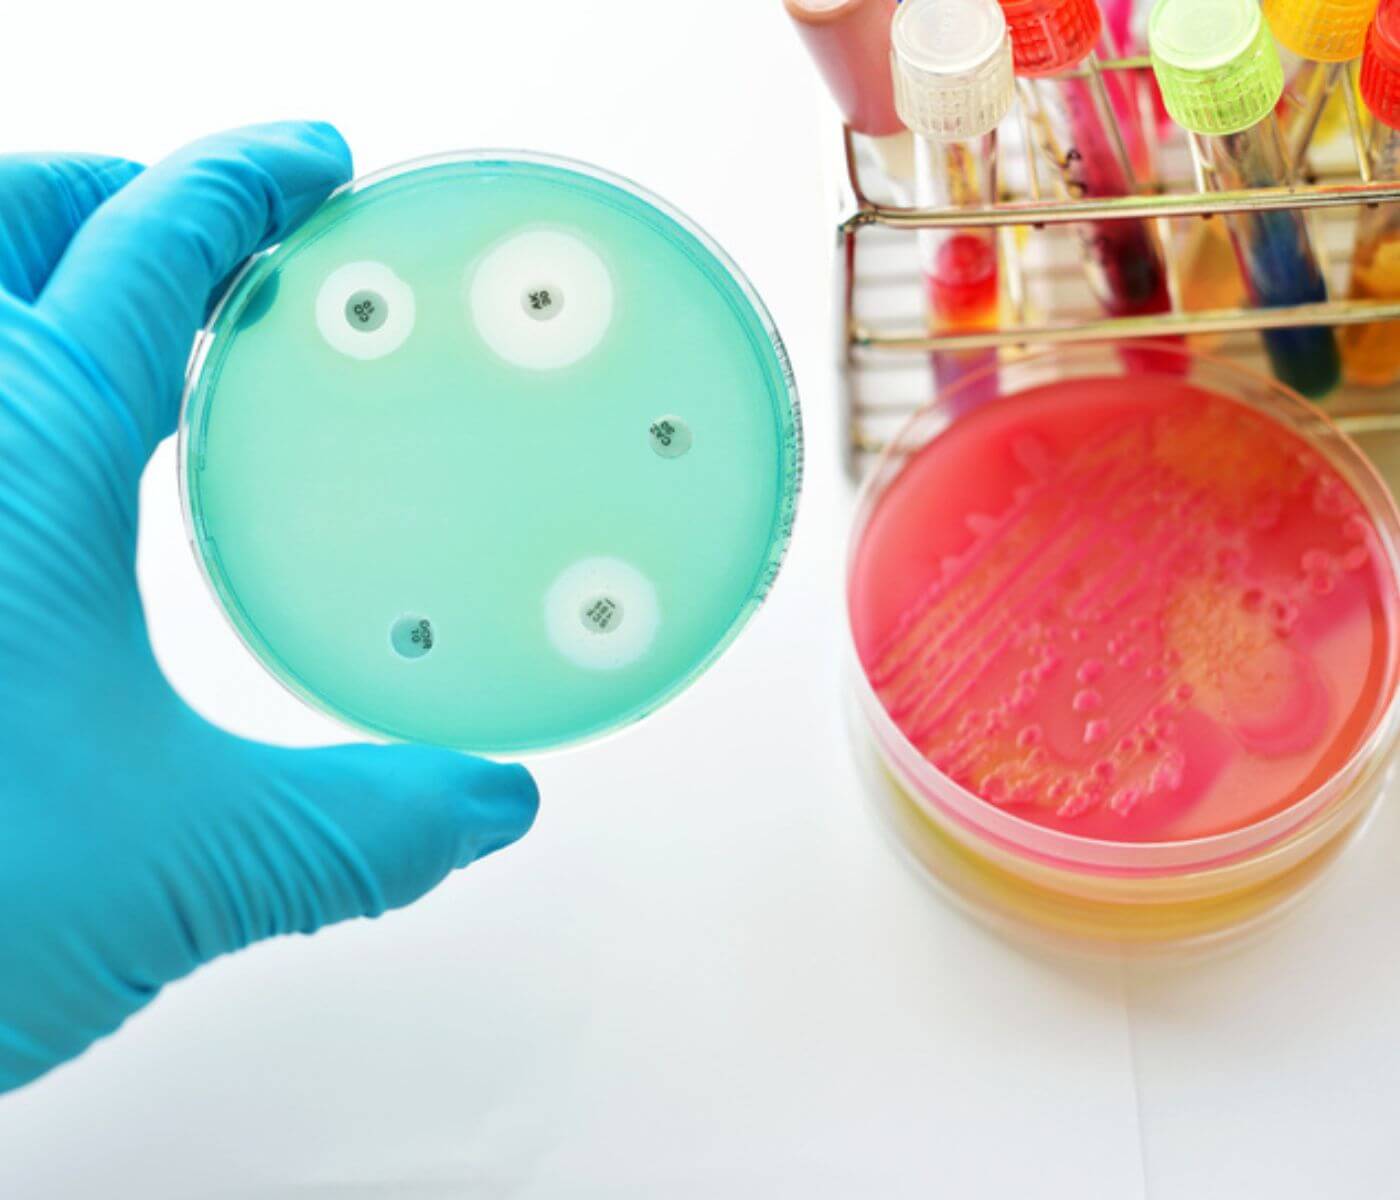 البكتيريا المقاومة للمضادات الحيوية عالية الإستخدام لا تزال دائمة في...